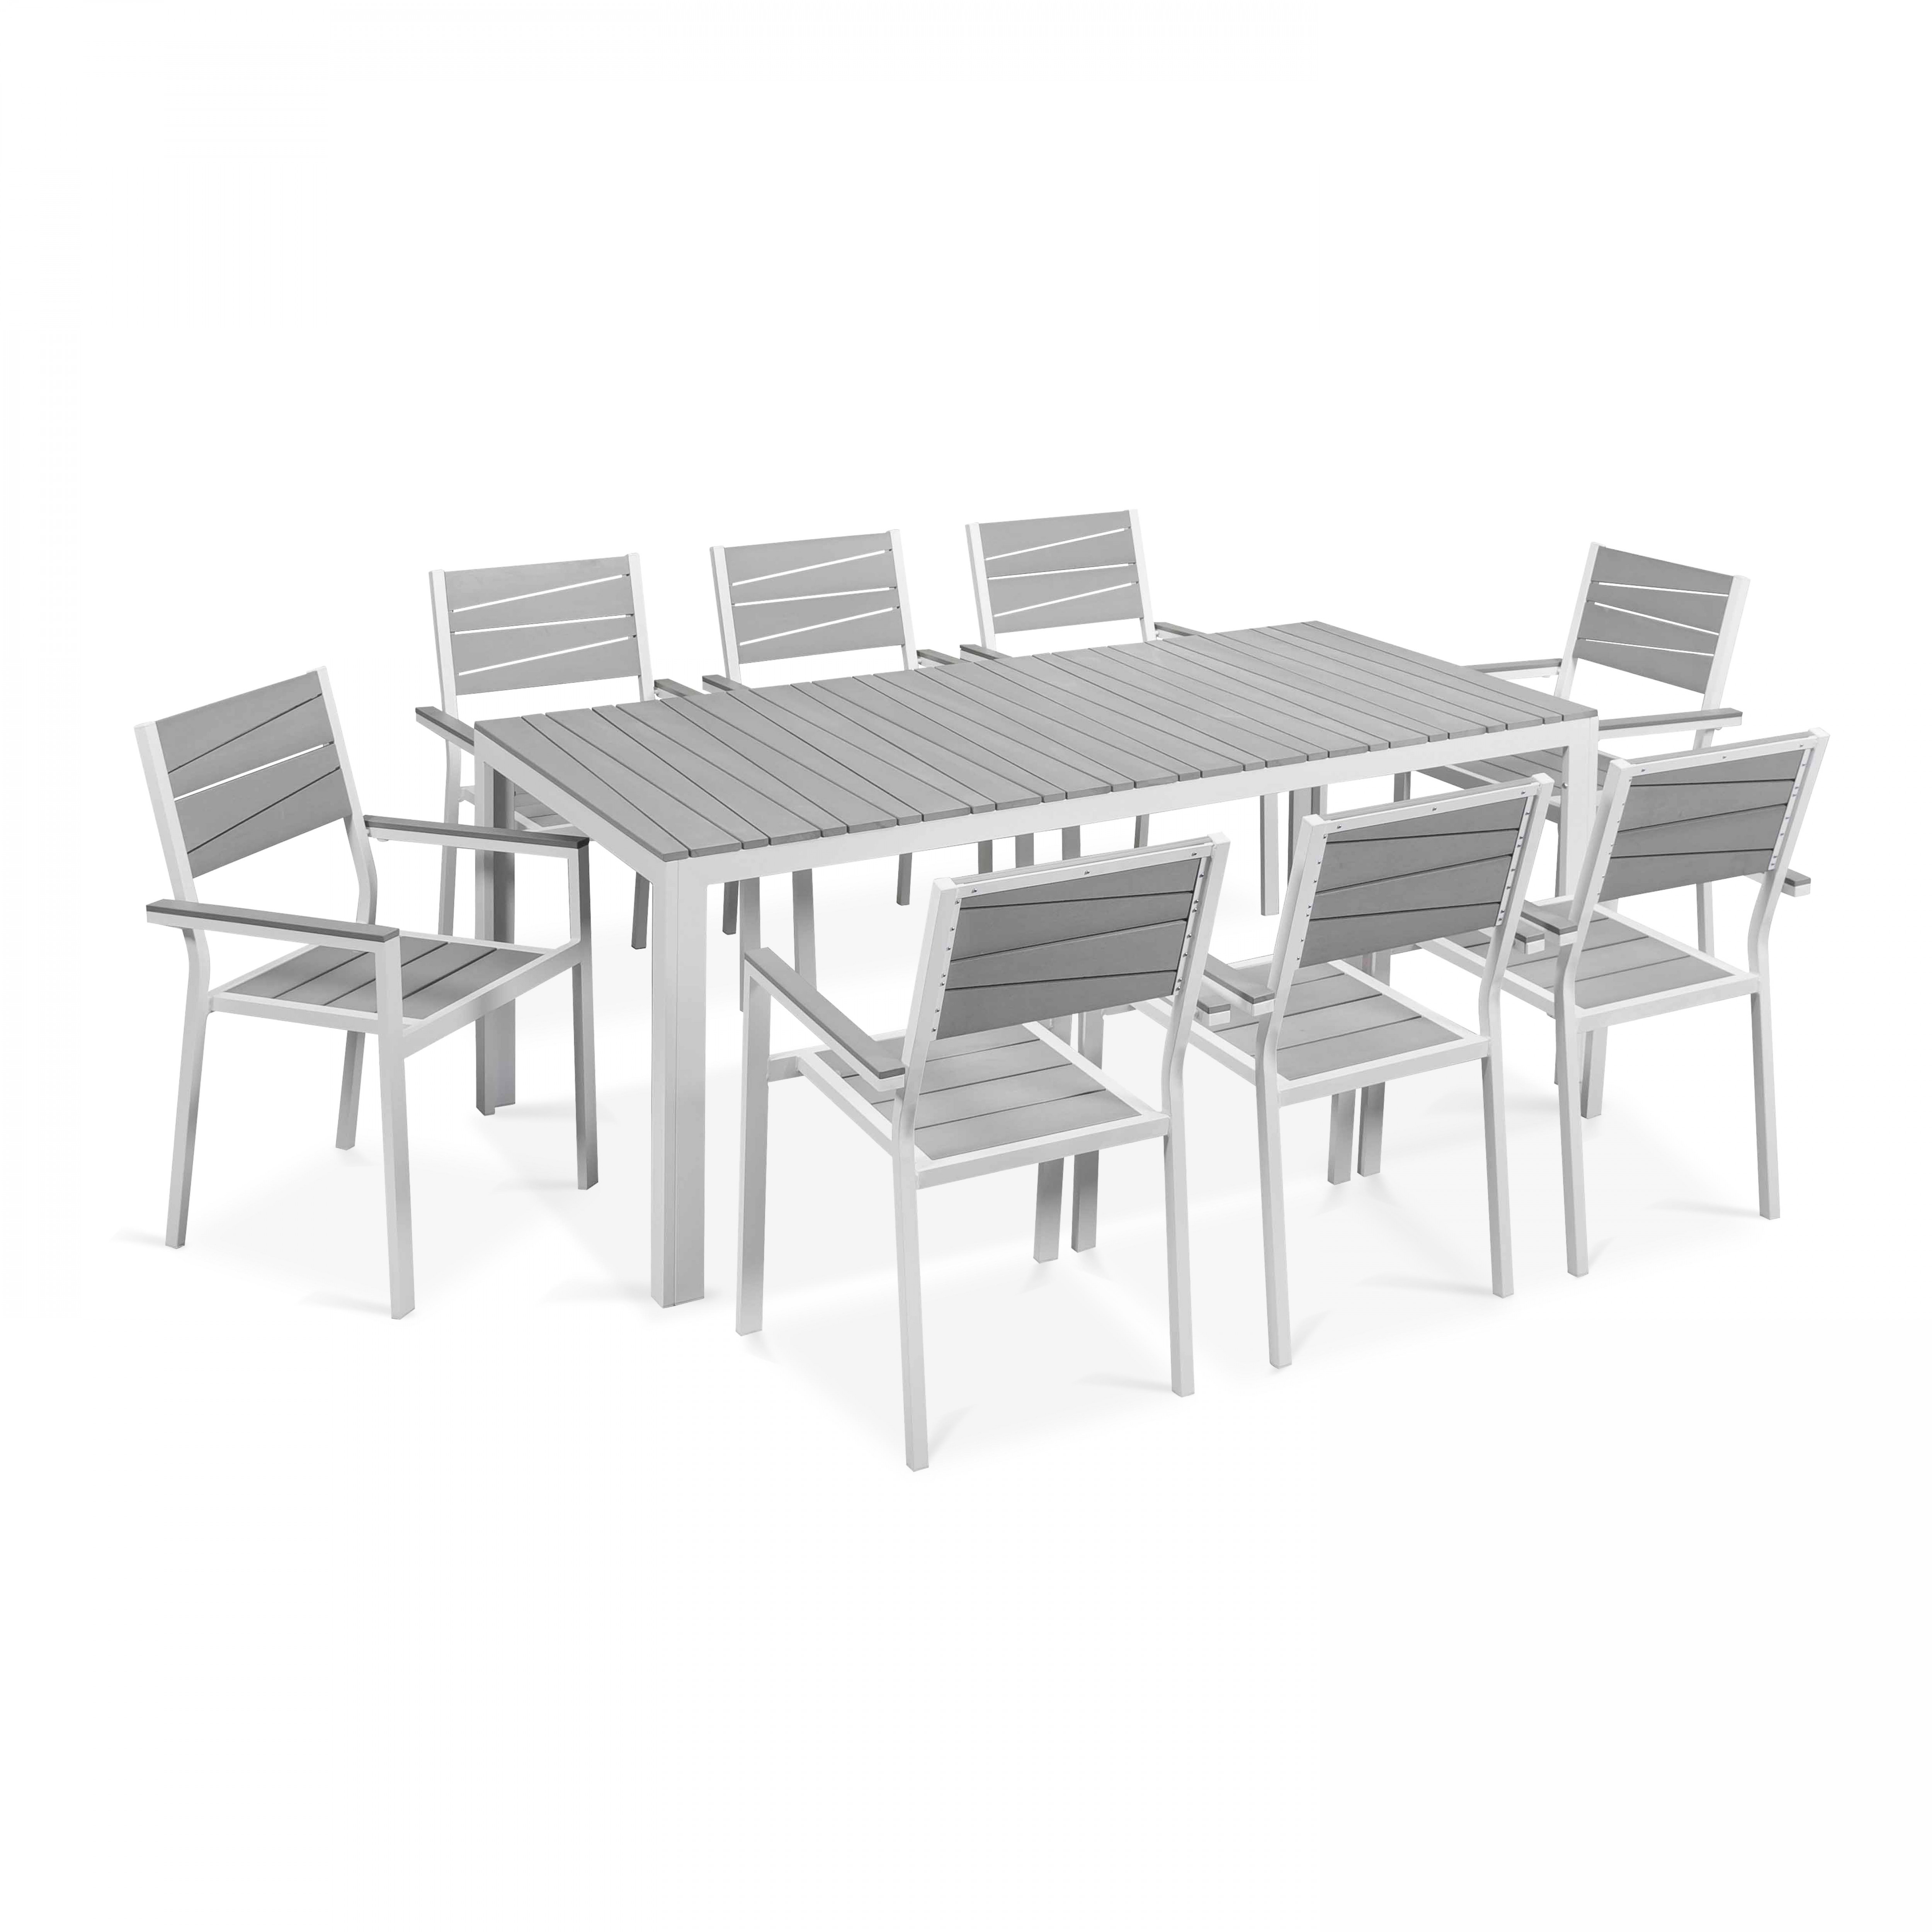 Table de jardin aluminium et polywood et 8 chaises avec accoudoirs